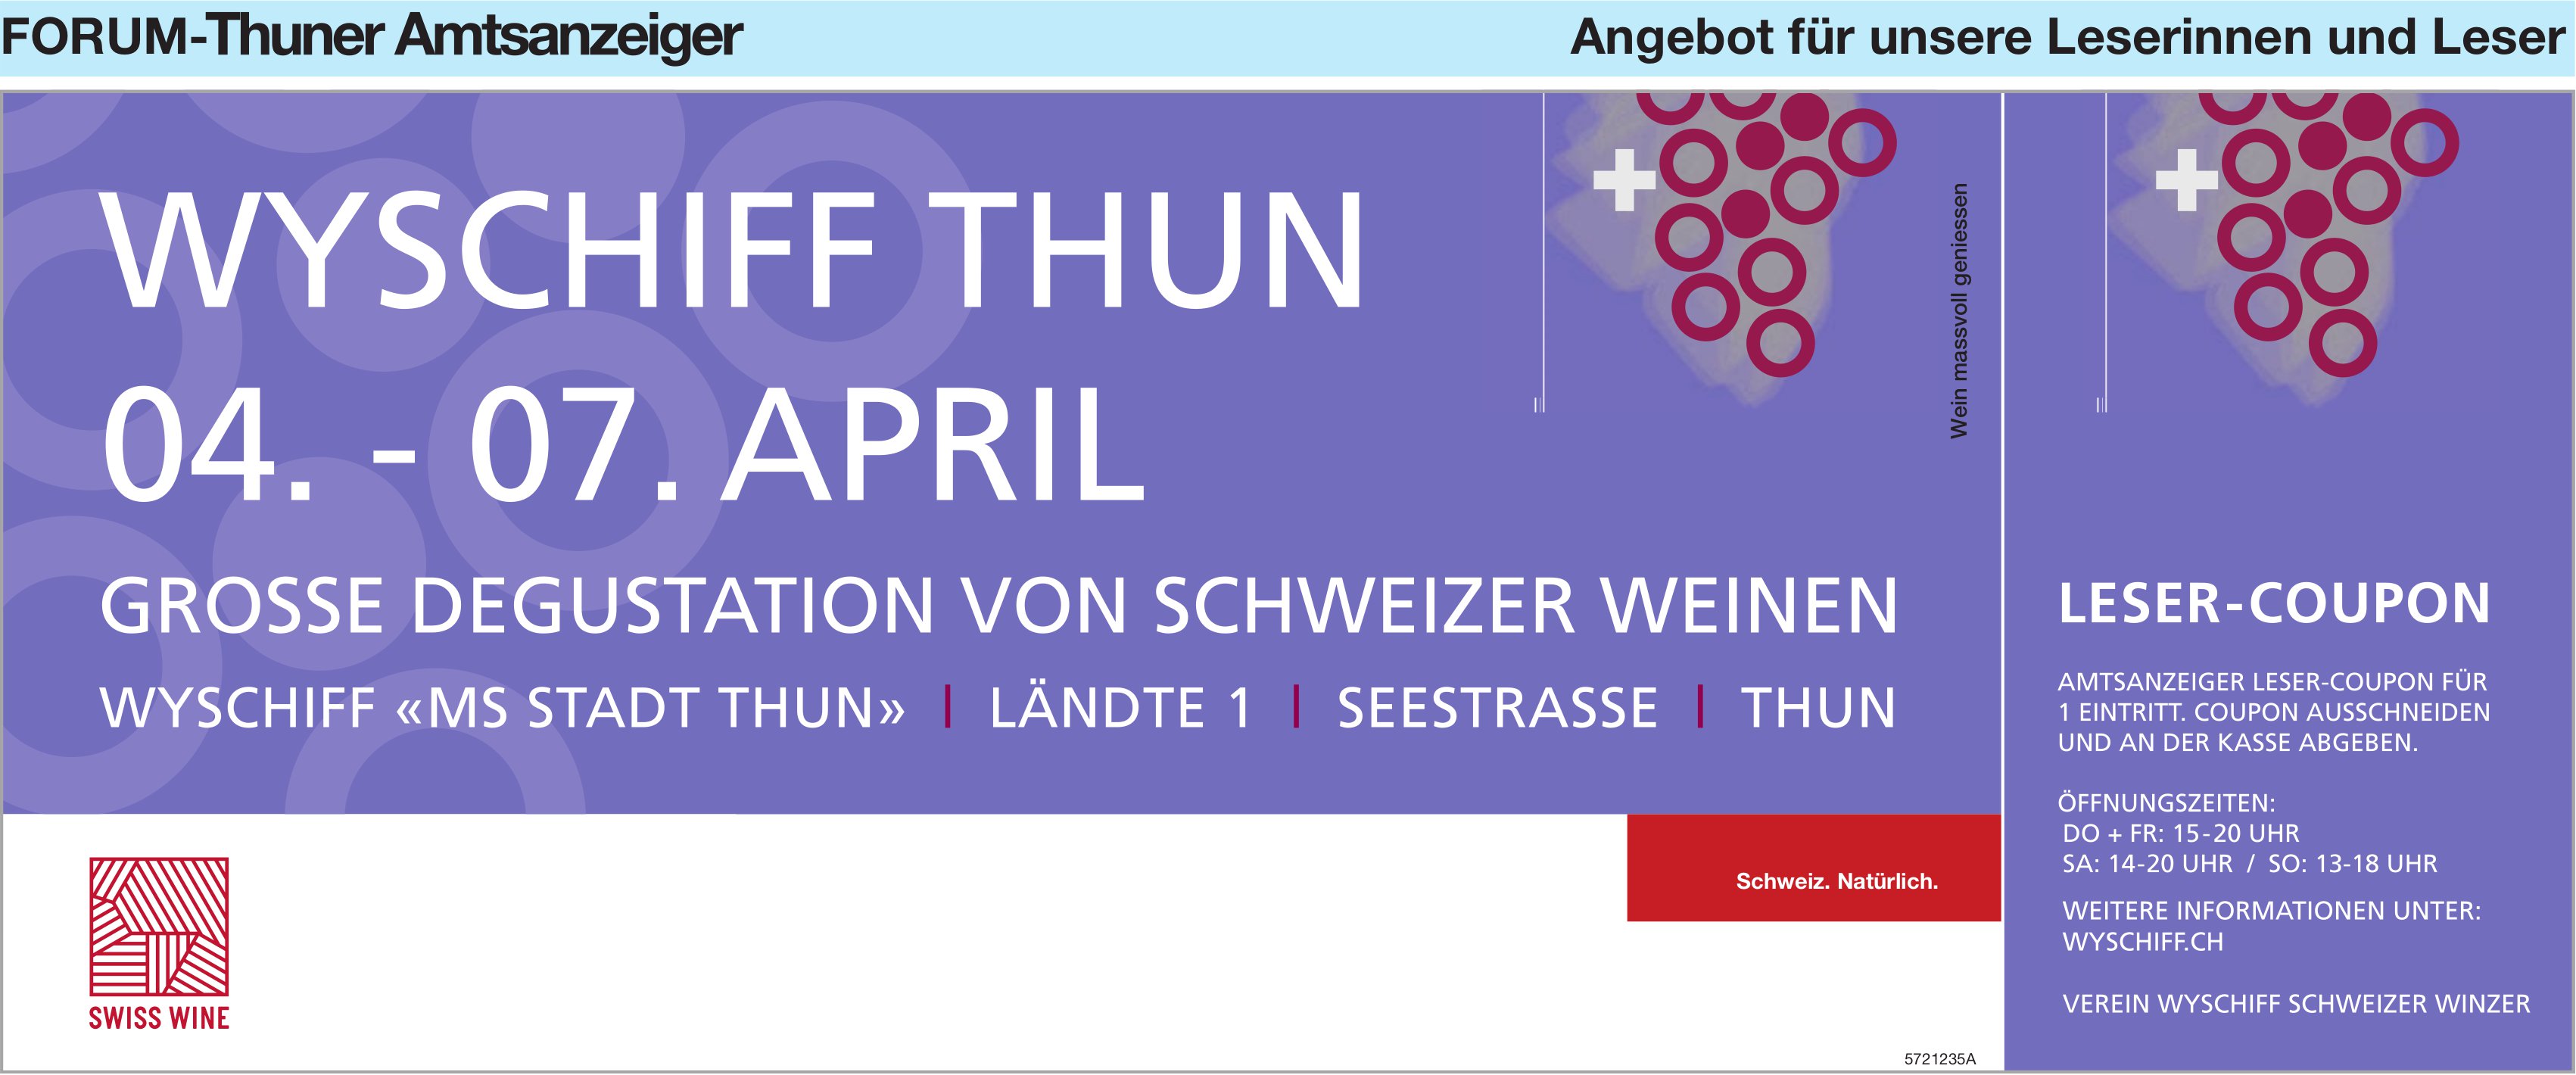 Wyschiff Thun 04. - 07. April, Verein Wyschiff Schweizer Winzer